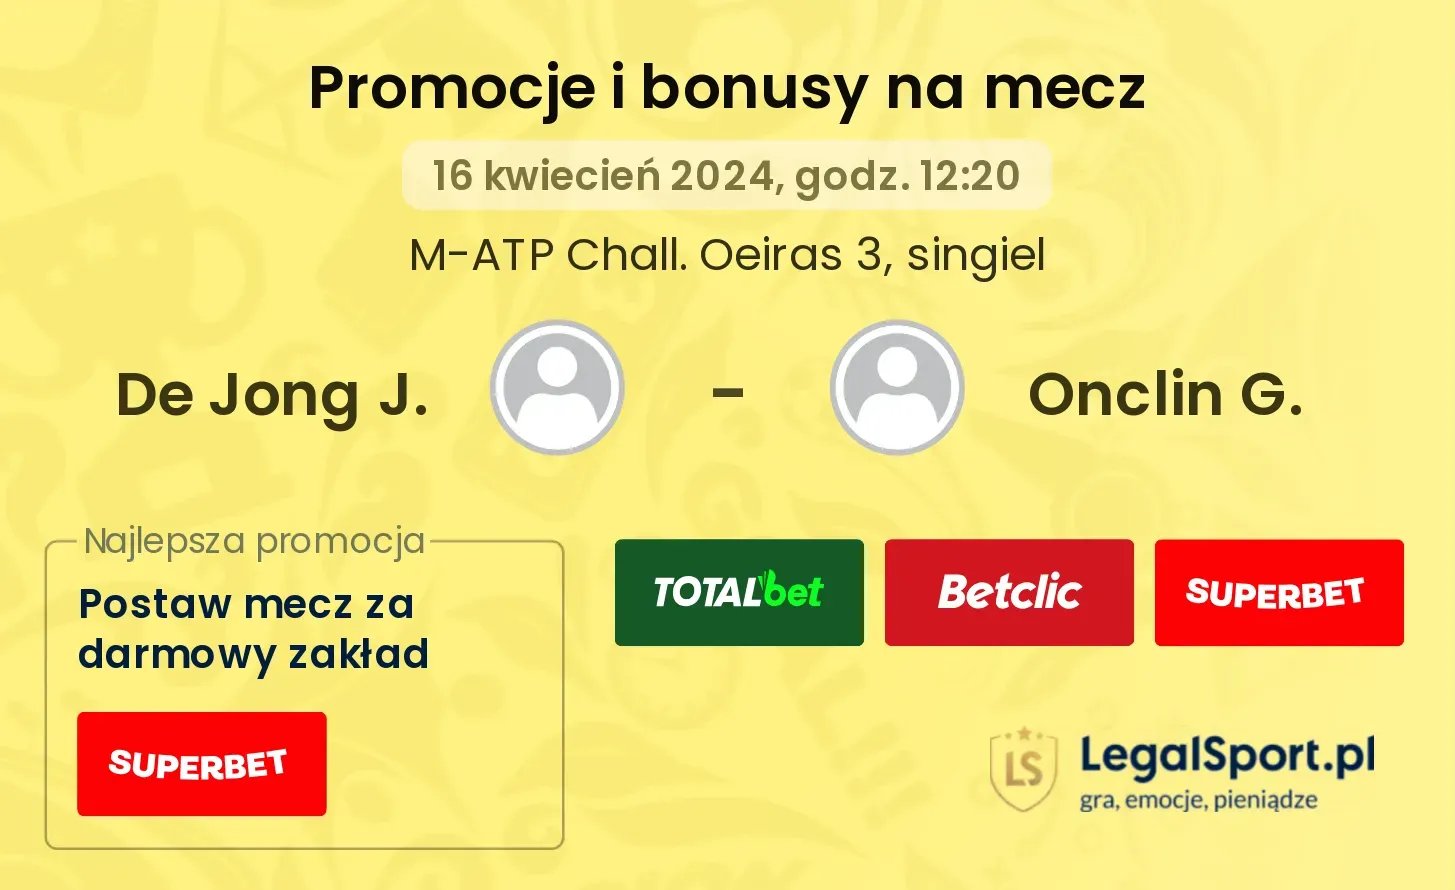 De Jong J. - Onclin G. promocje bonusy na mecz